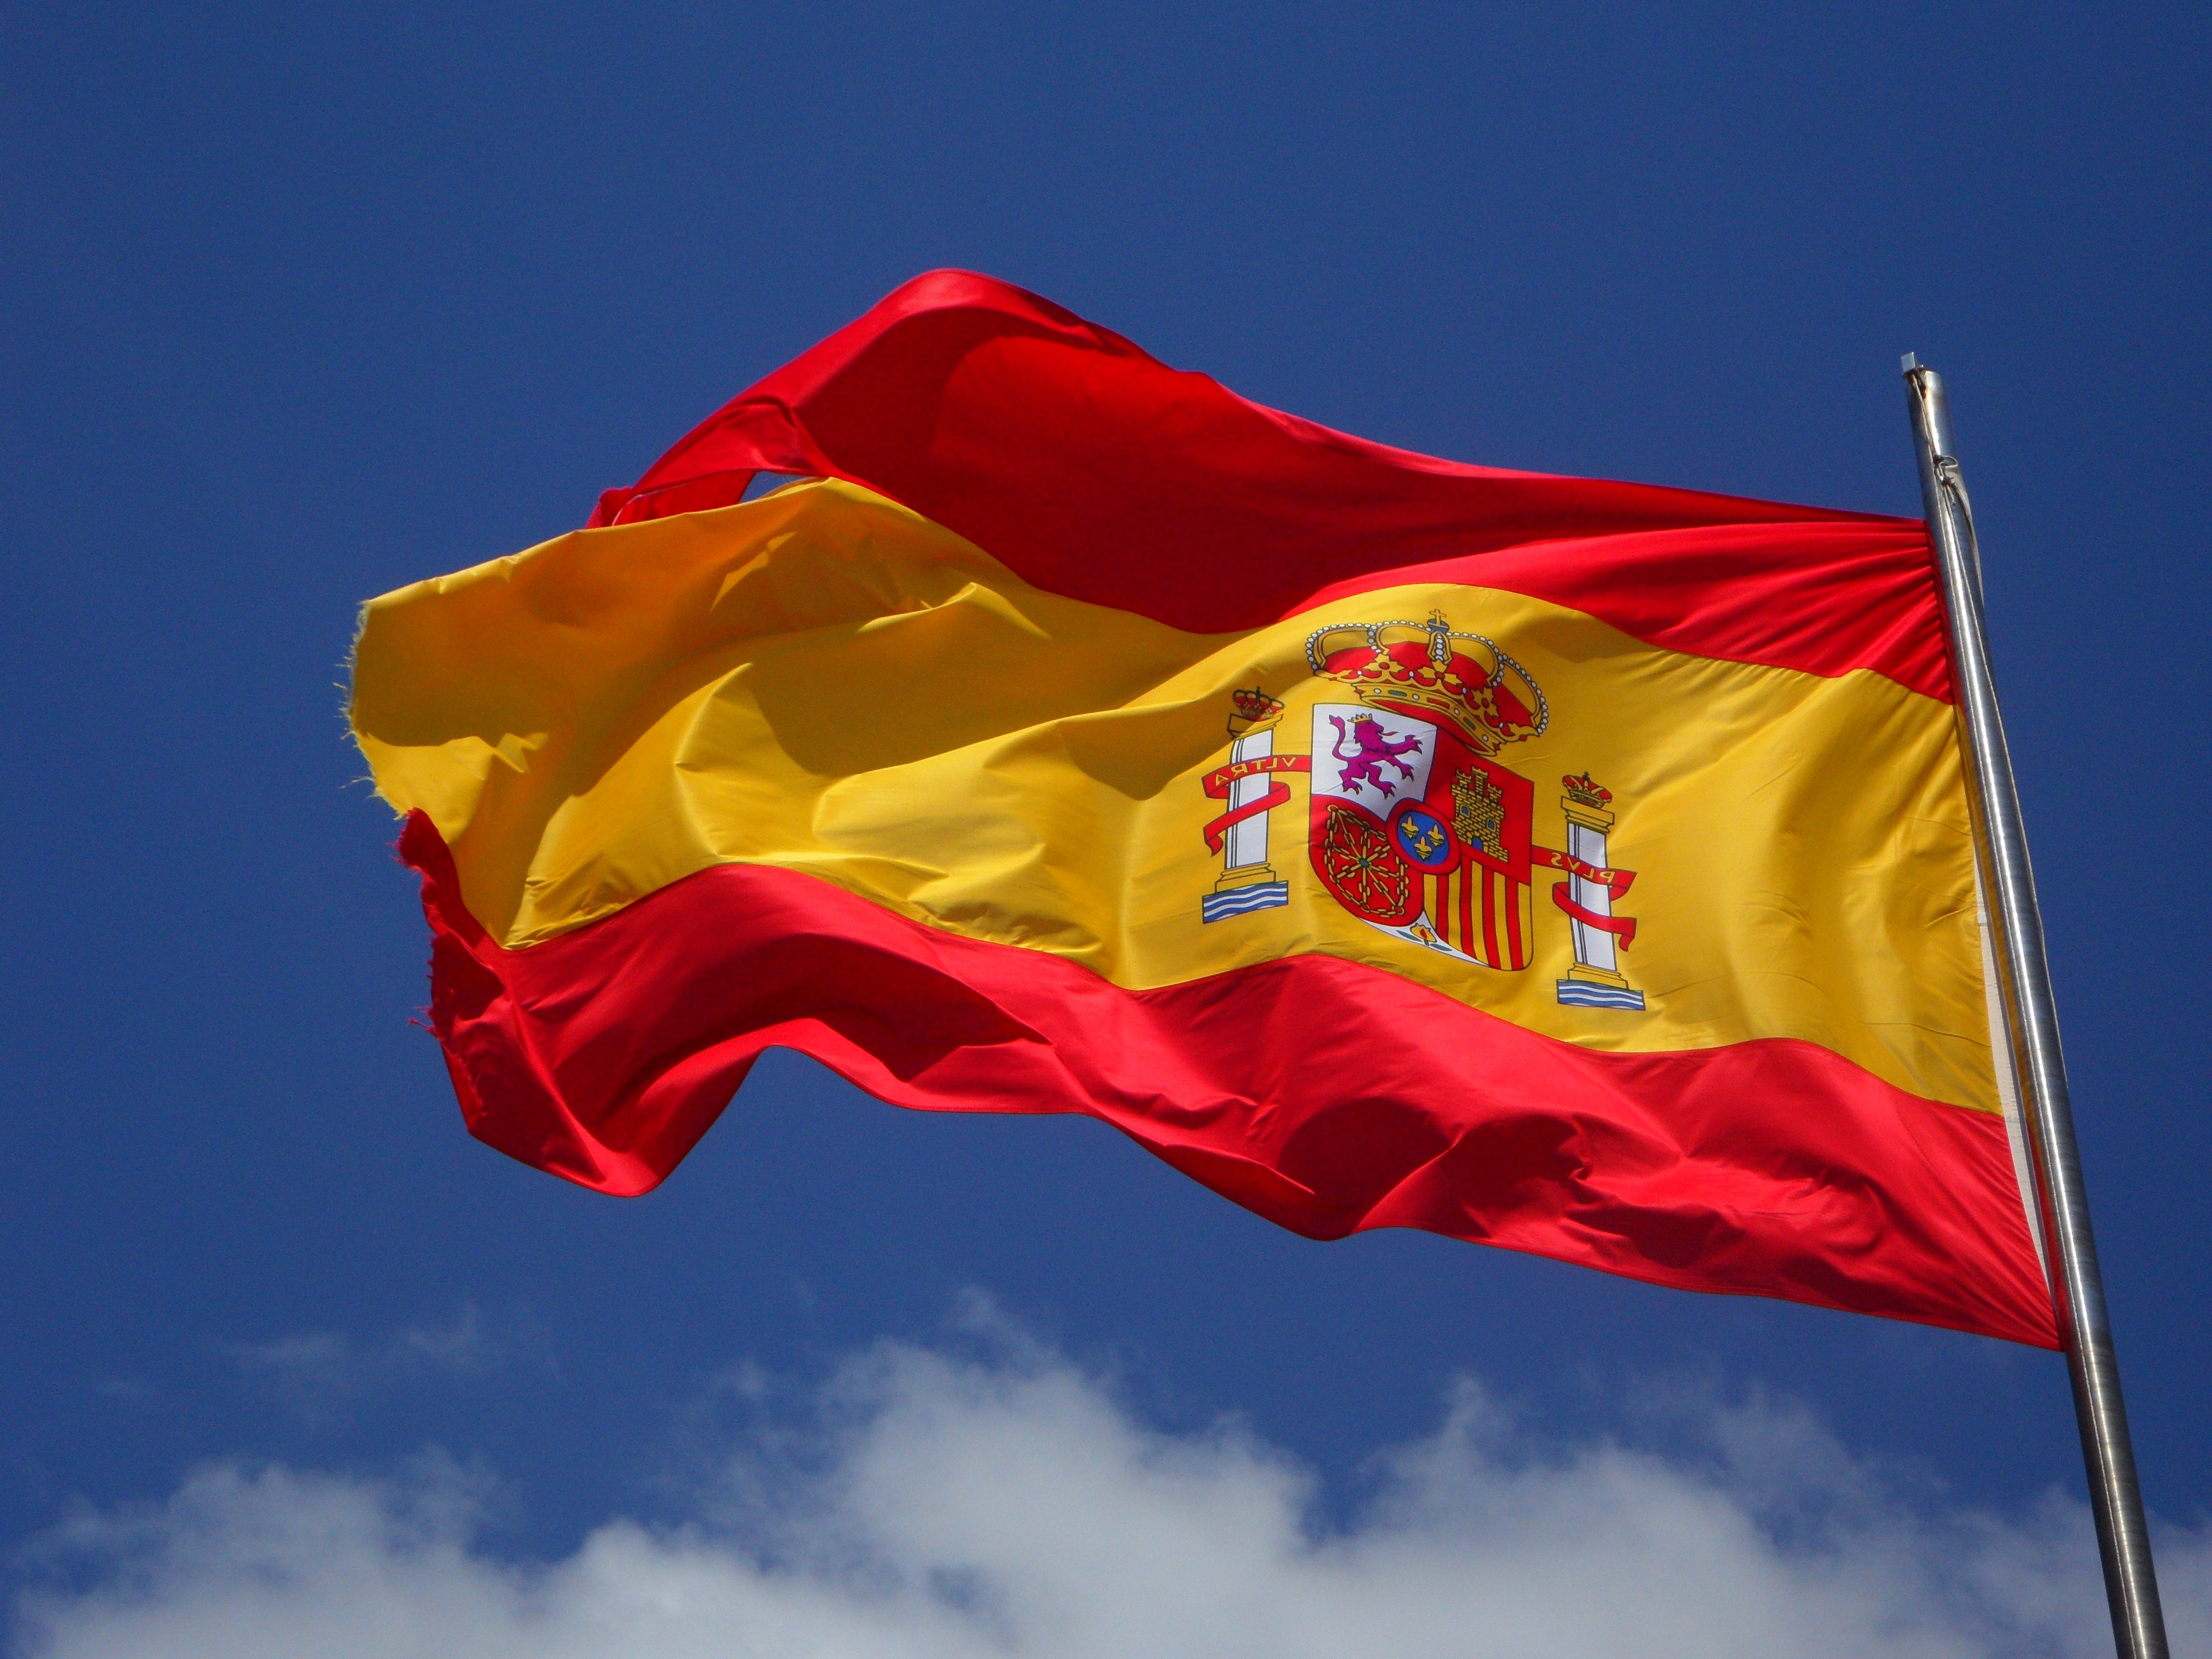 A Spanish flag flying on a pole